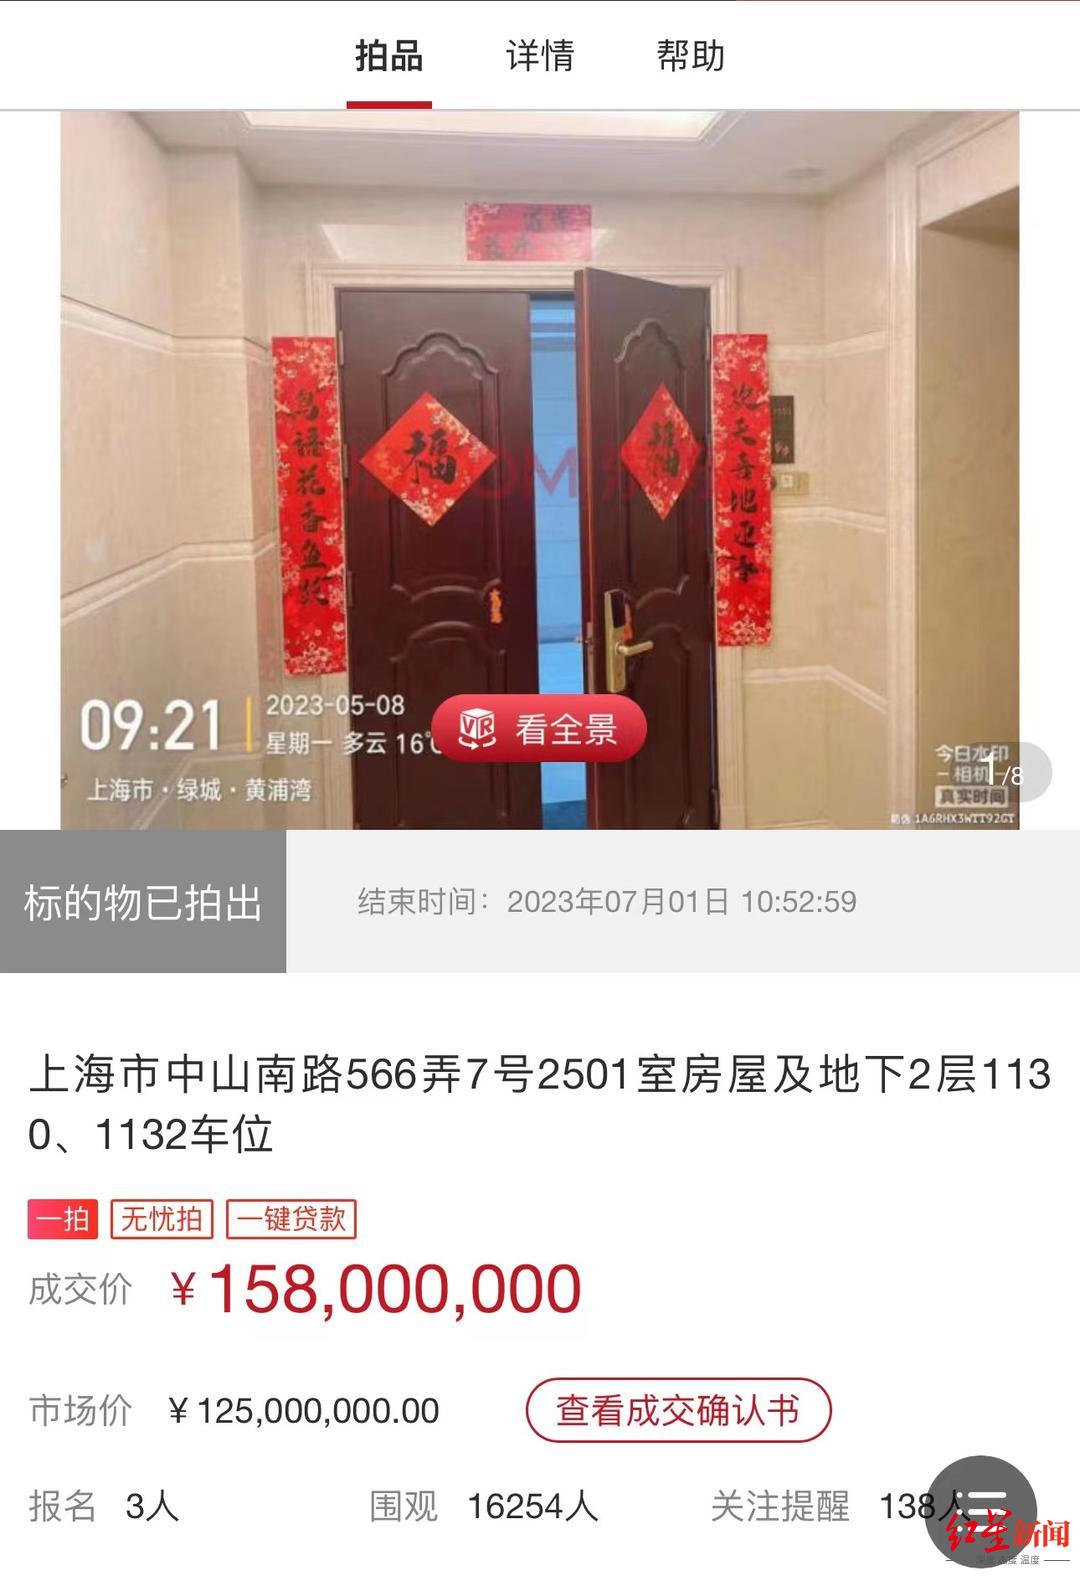  上海知名豪宅1.58亿落槌，单价34万元，竞买者或为得物创始人